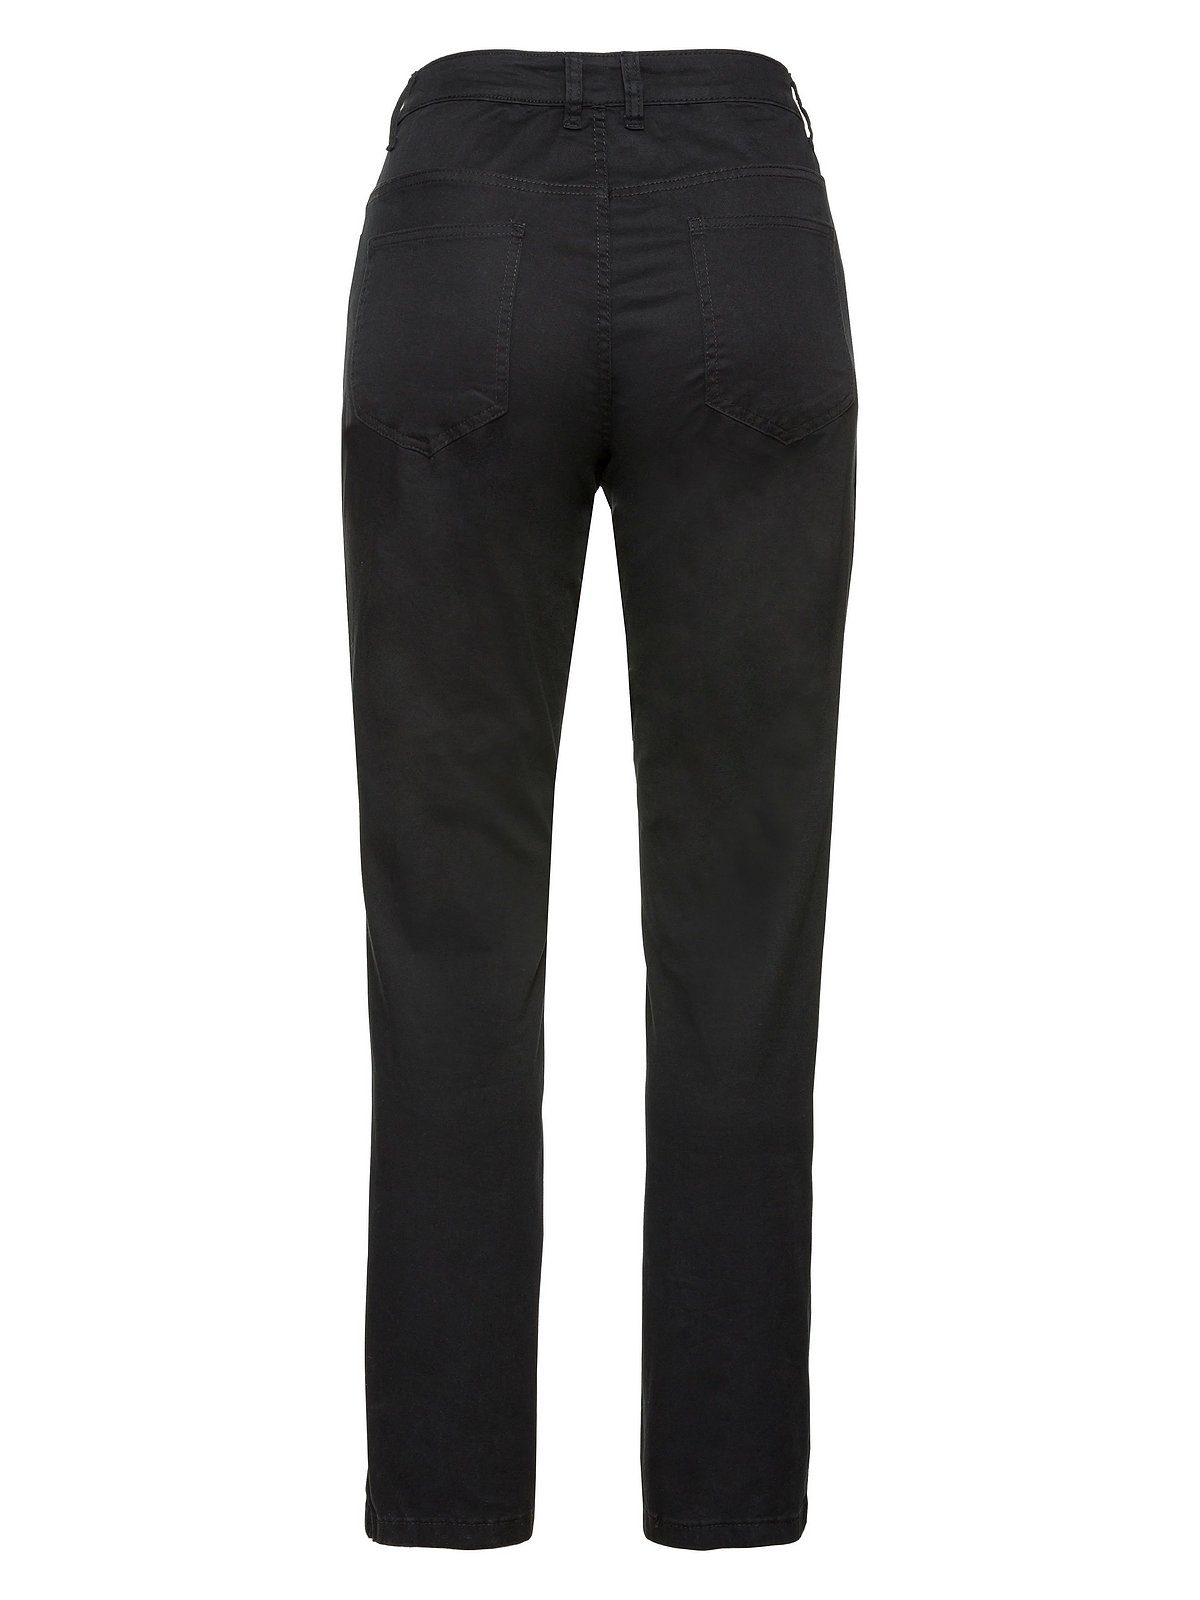 Große Größen Sheego schwarz Twill-Qualität elastische Stretch-Hose